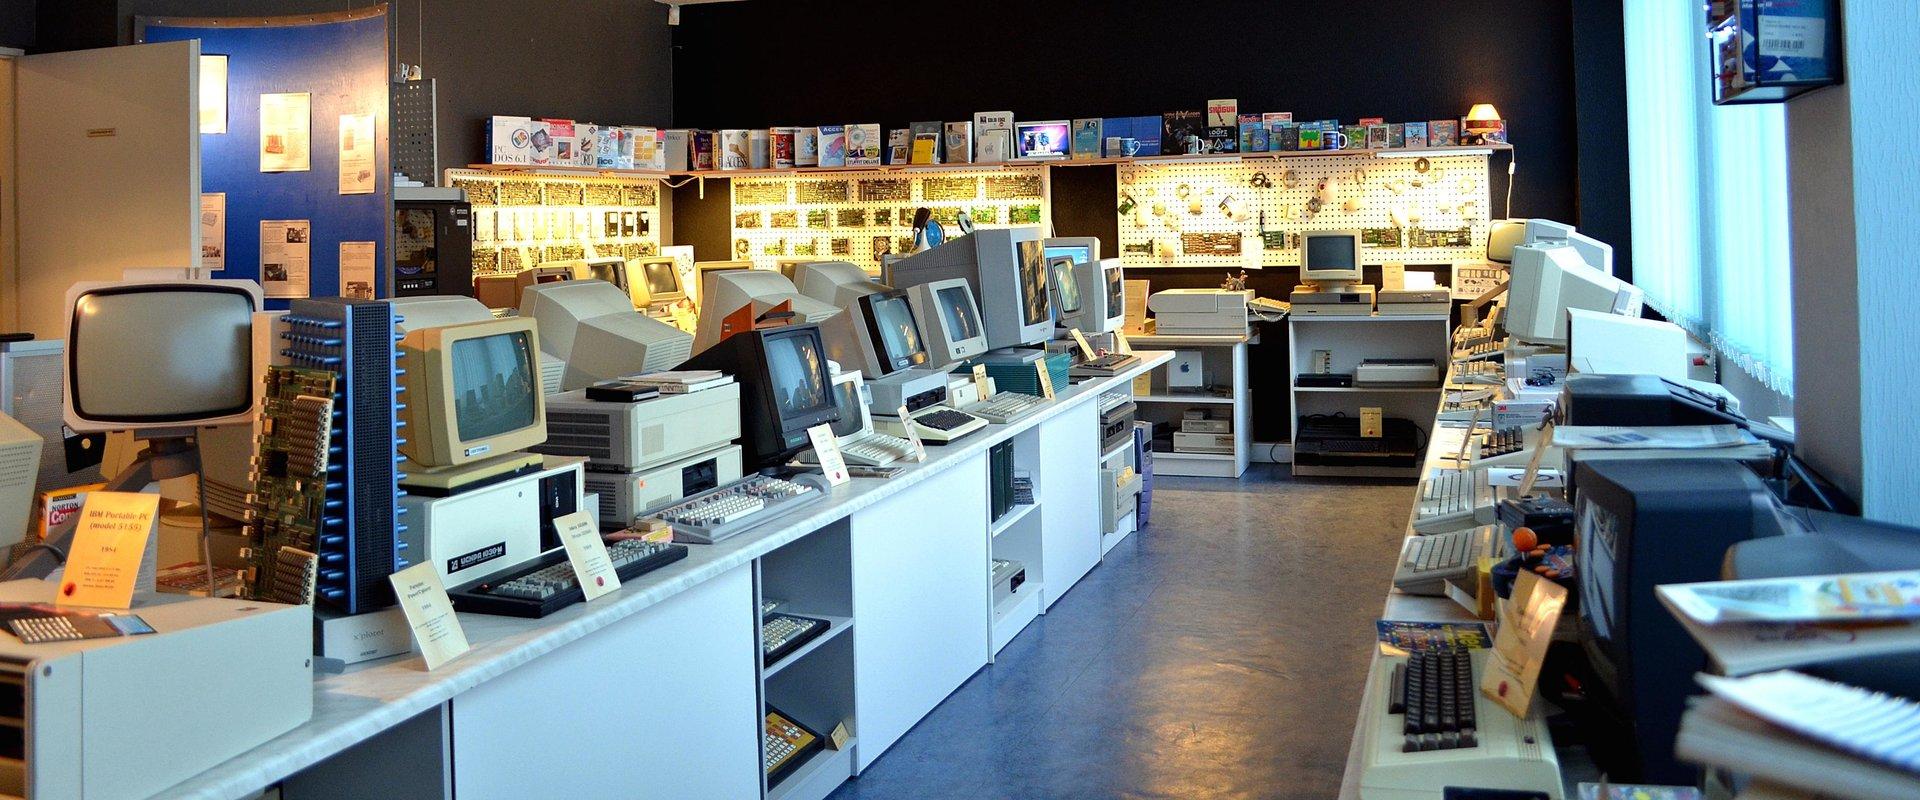 Tallinnas asuv Eesti vanim ja ainus arvutimuuseum on avatud kõigile huvilistele. Muuseum on suur erakogu ja pakub külastajatele nostalgilisi elamusi, 